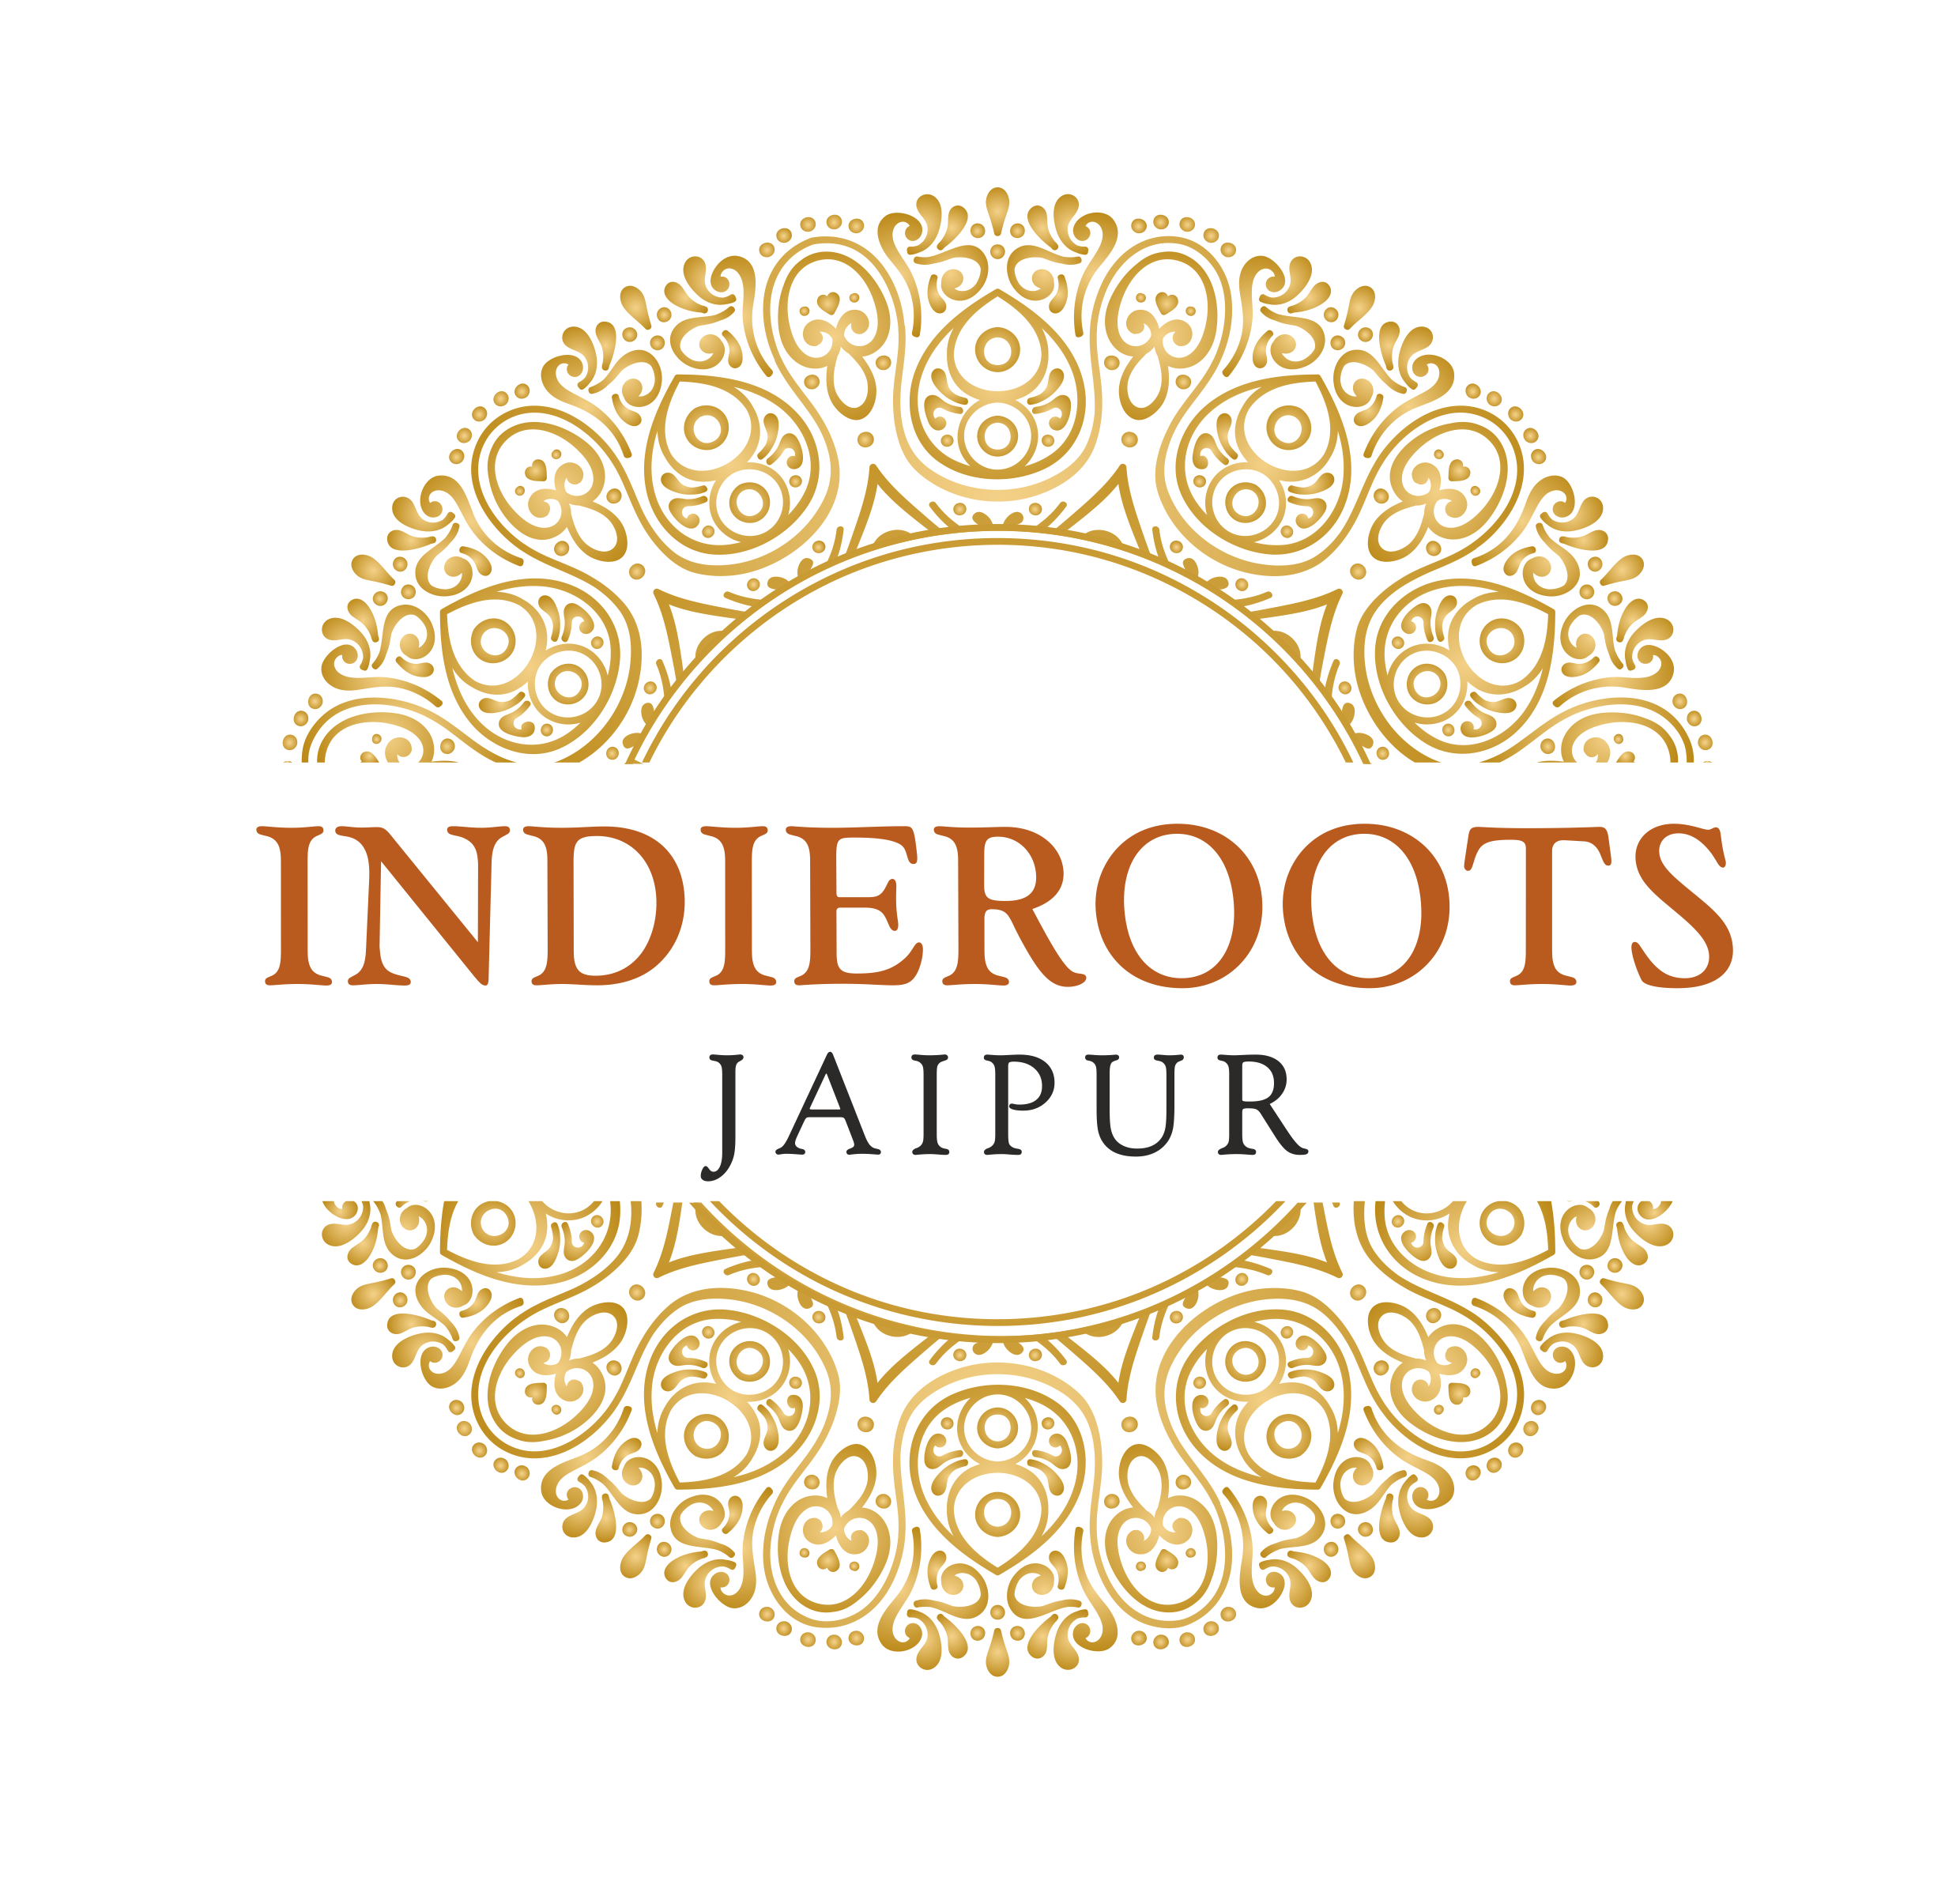 Indierootsjaipur